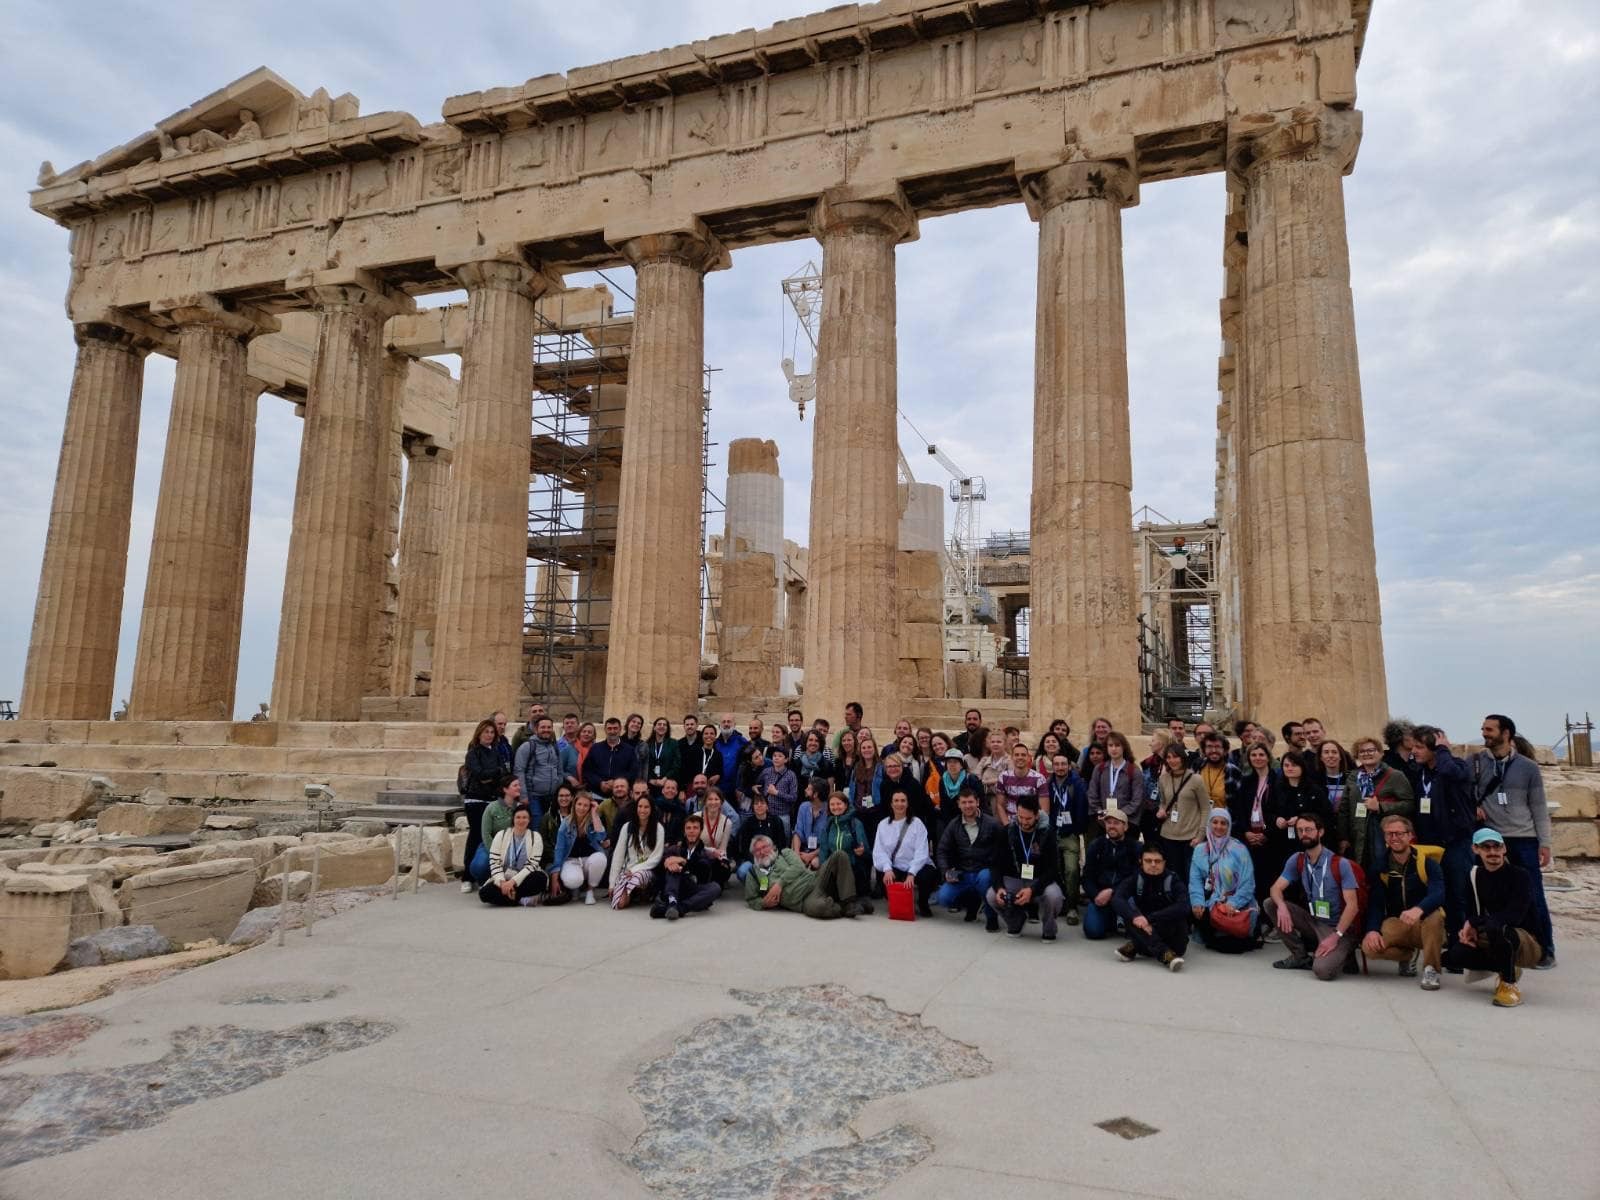 Acropolis spring gathering